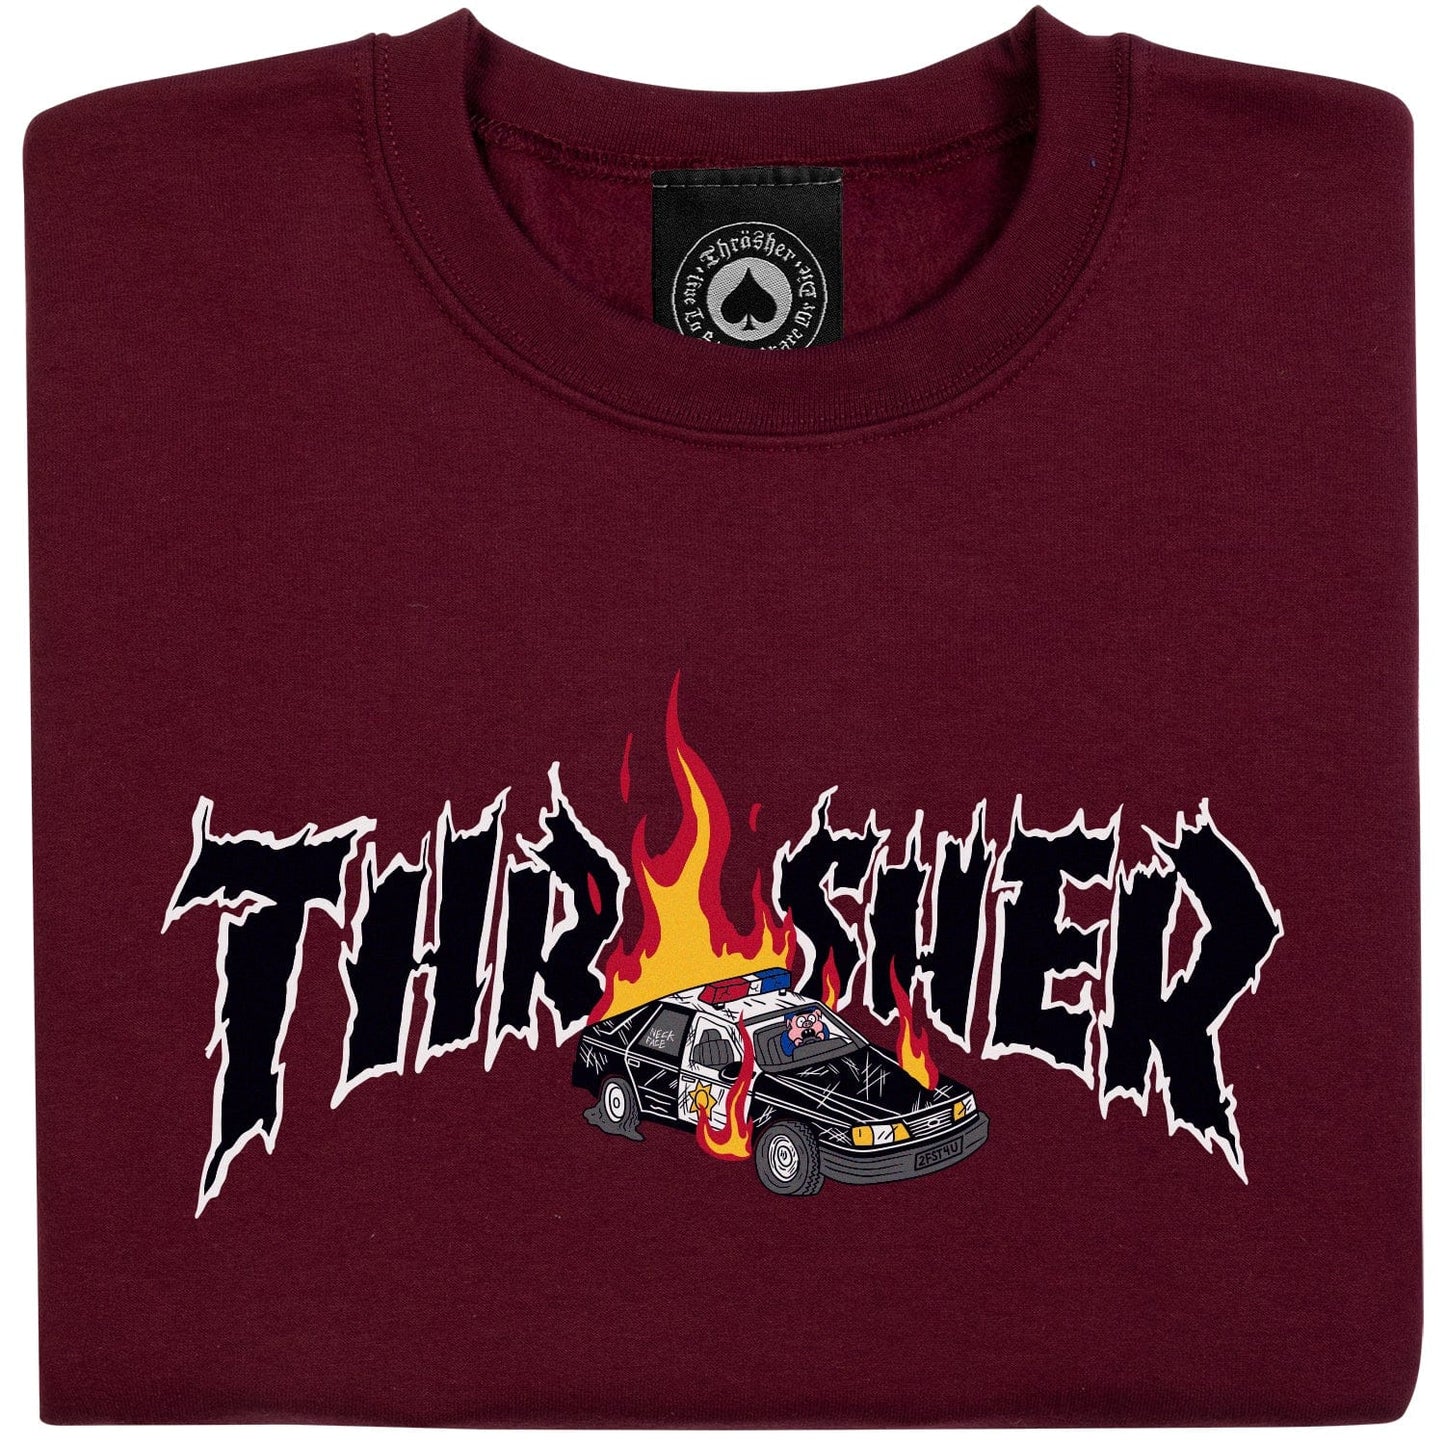 Thrasher | Cop Car Crewneck Sweatshirt - Maroon